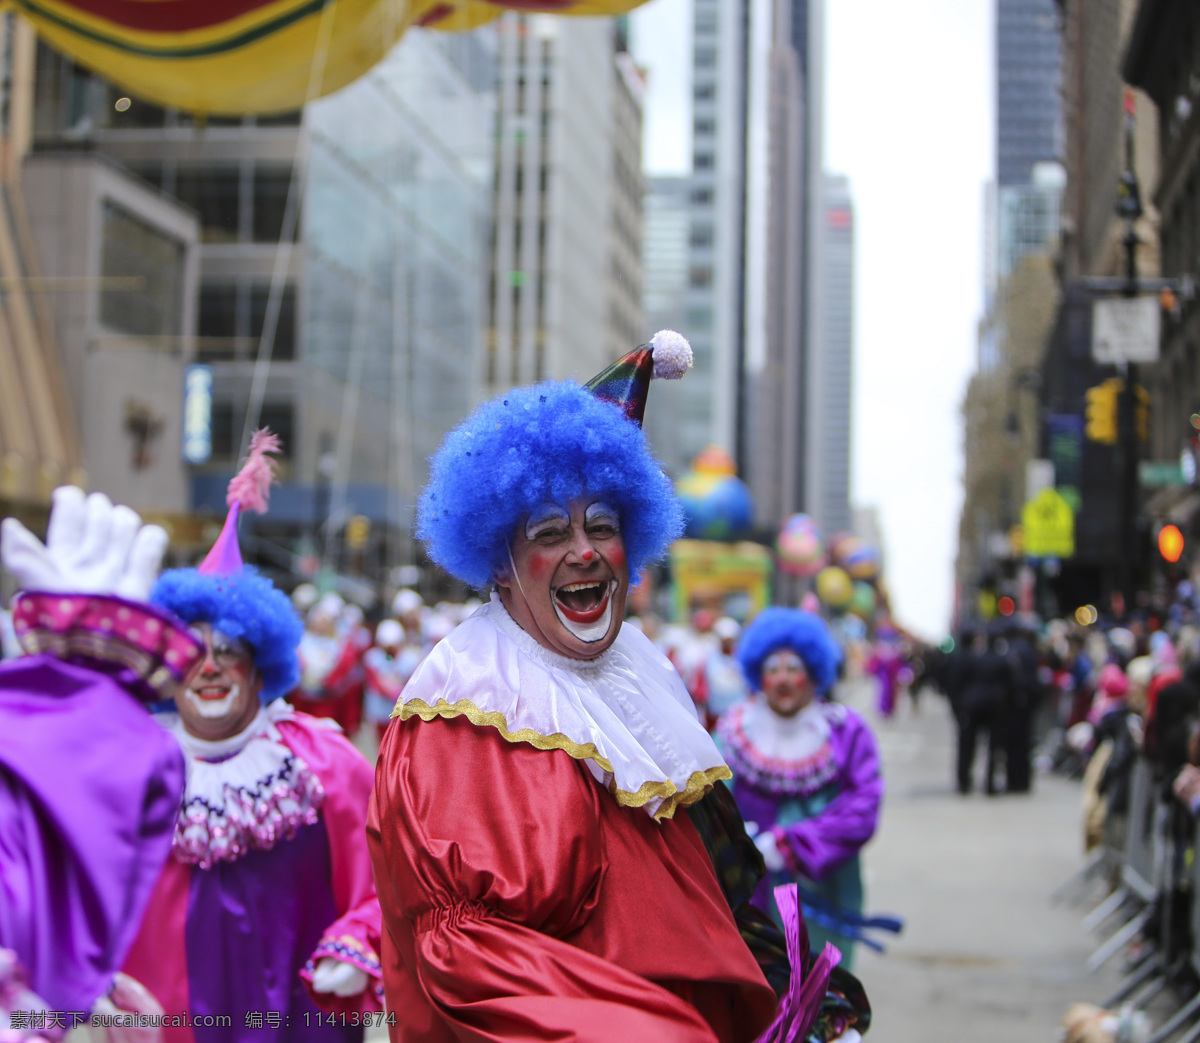 国外 小丑 艺术 活动 行为 表演 行为艺术 街头活动 文艺活动 化妆活动 嘉年华 其他类别 生活百科